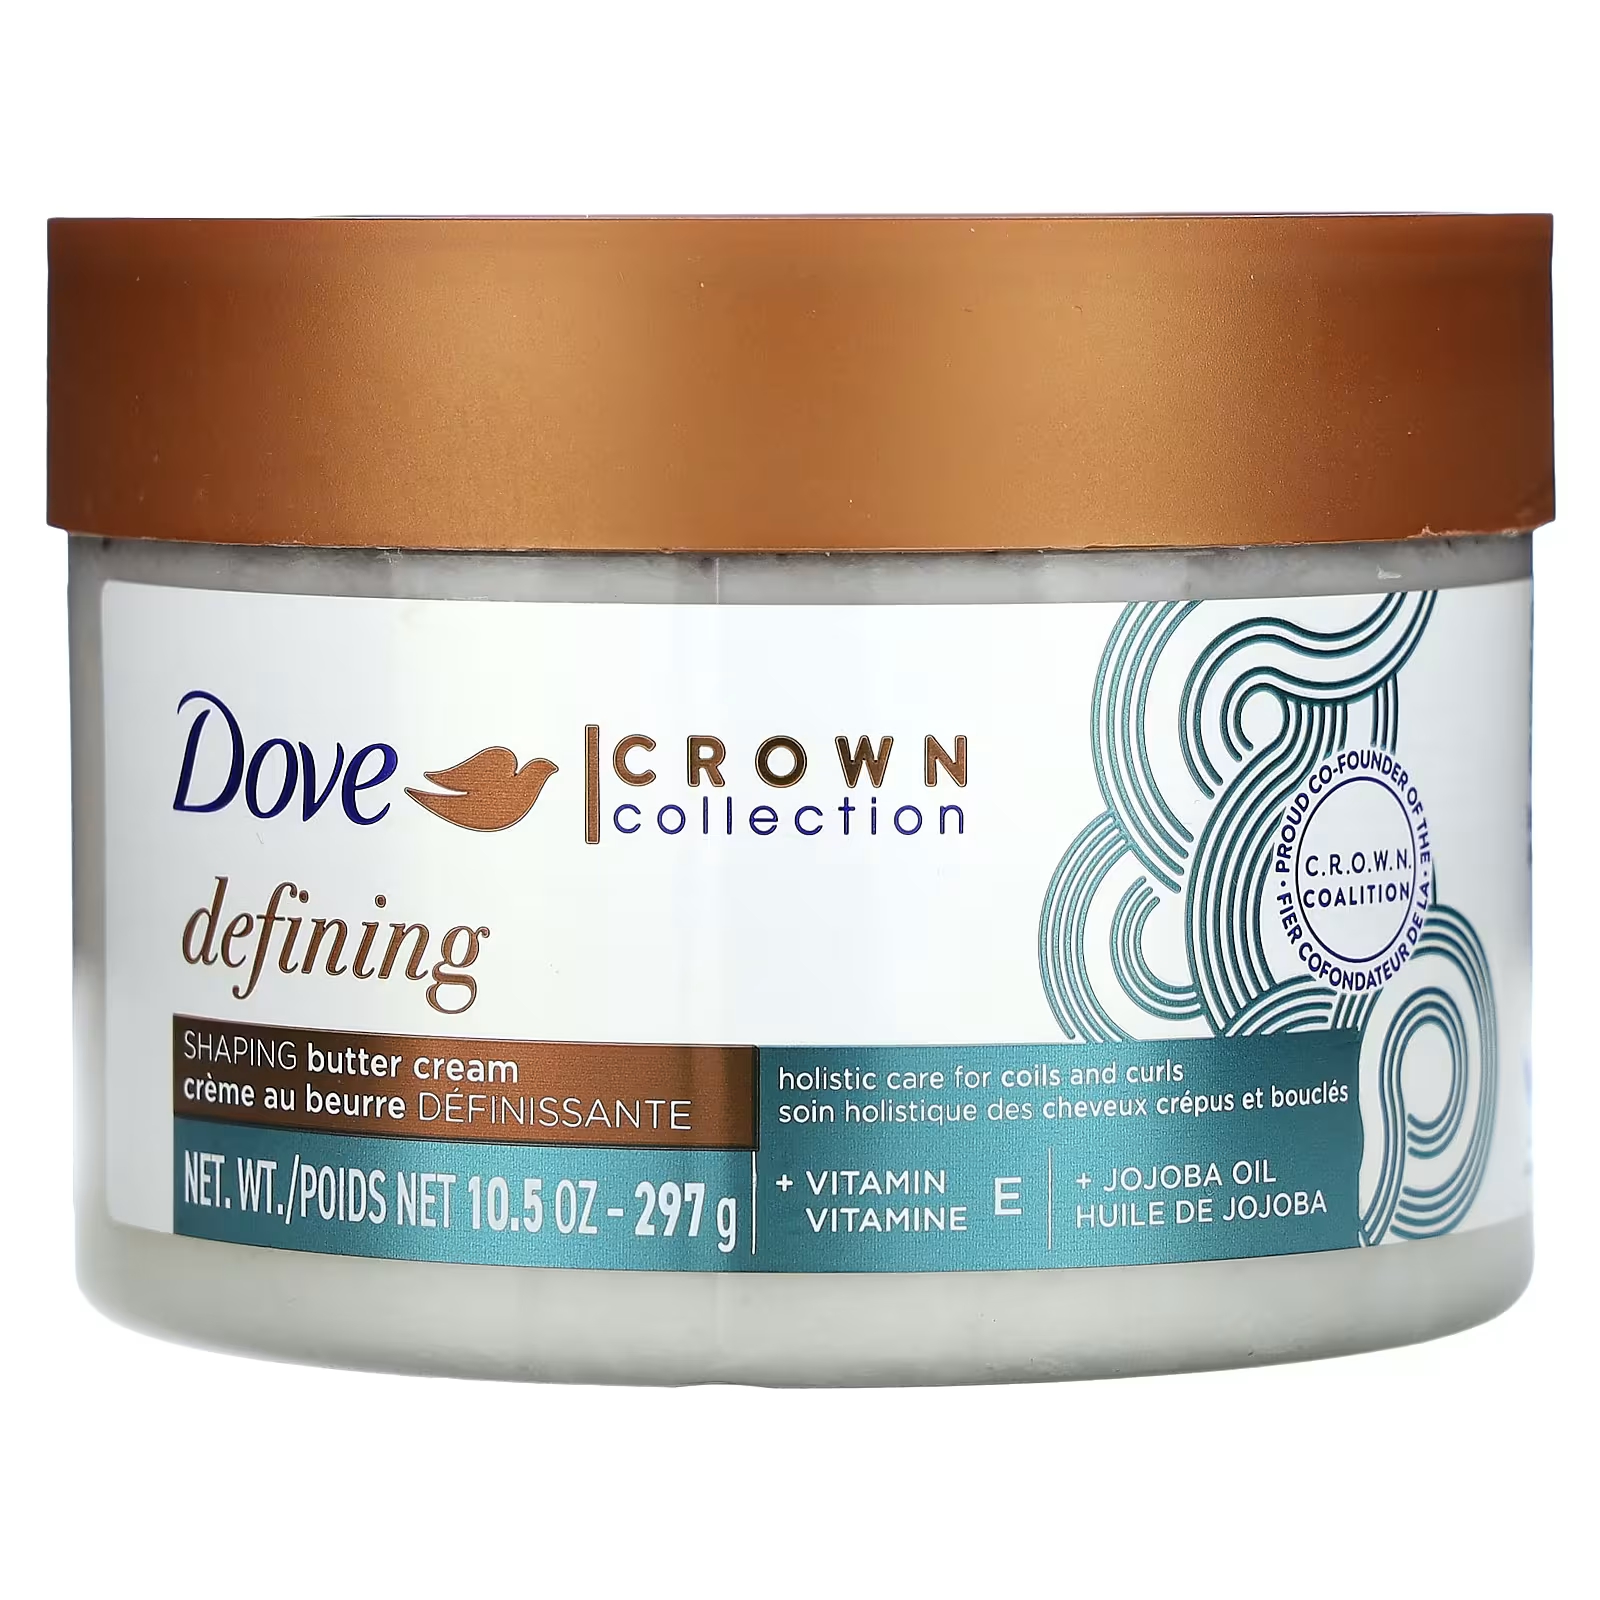 Крем моделирующий Dove Crown Collection Defining масляный, 297 г dove amplified textures крем с маслом для придания формы 10 5 унций 297 г